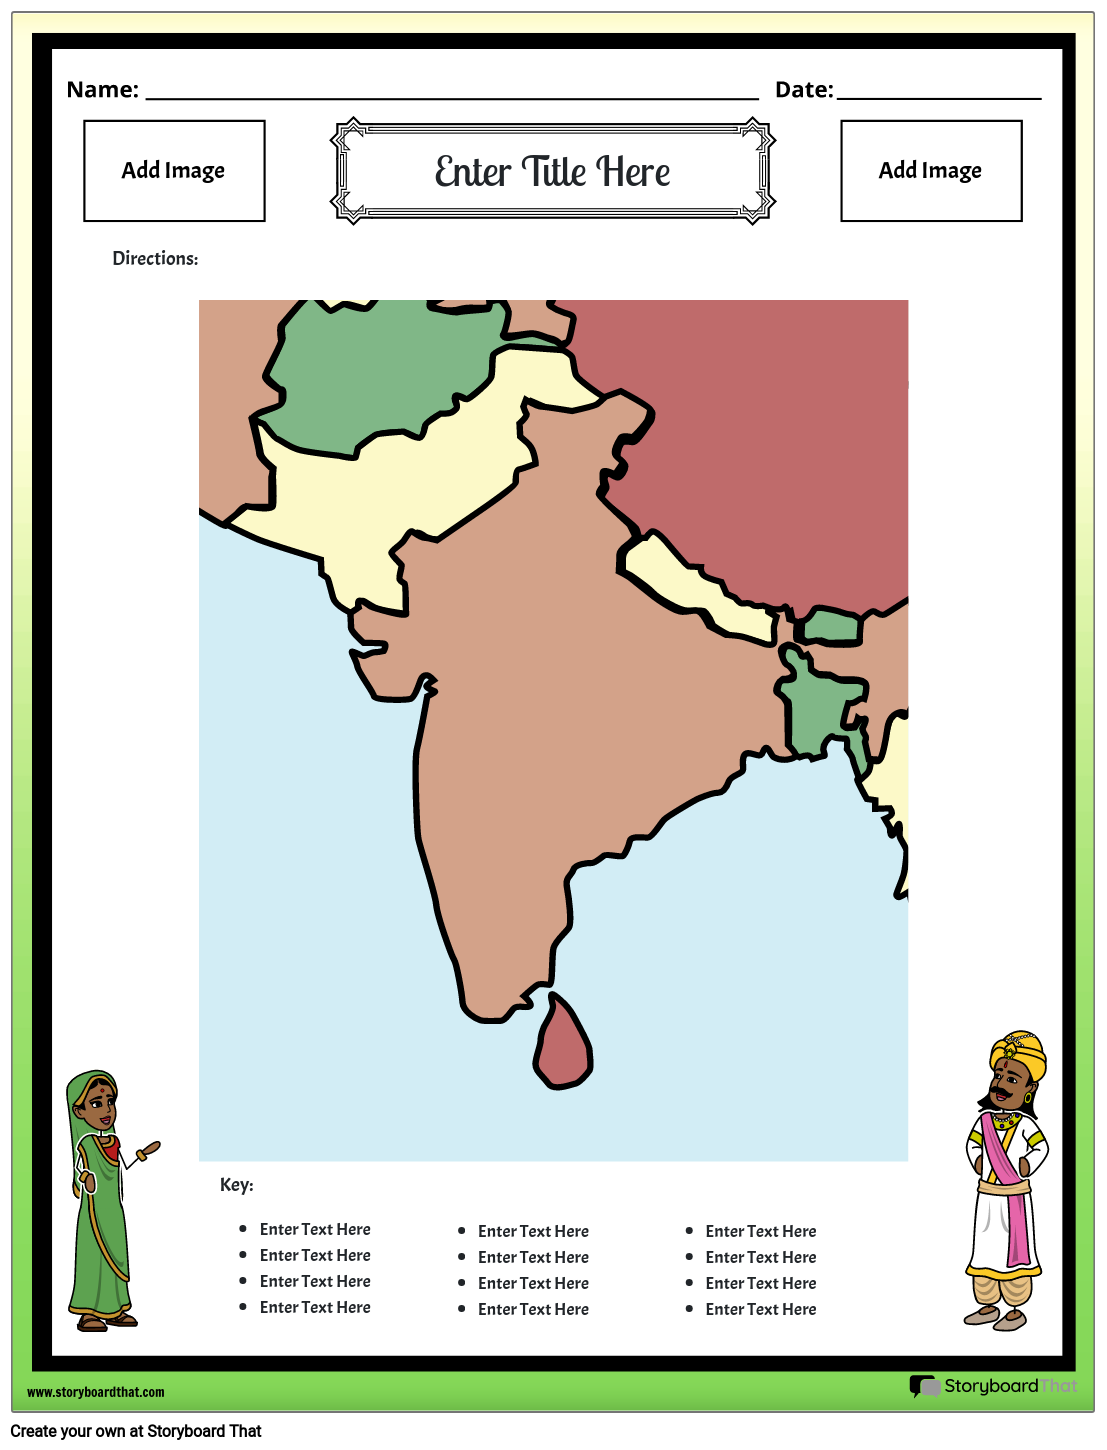 भारत का नक्शा